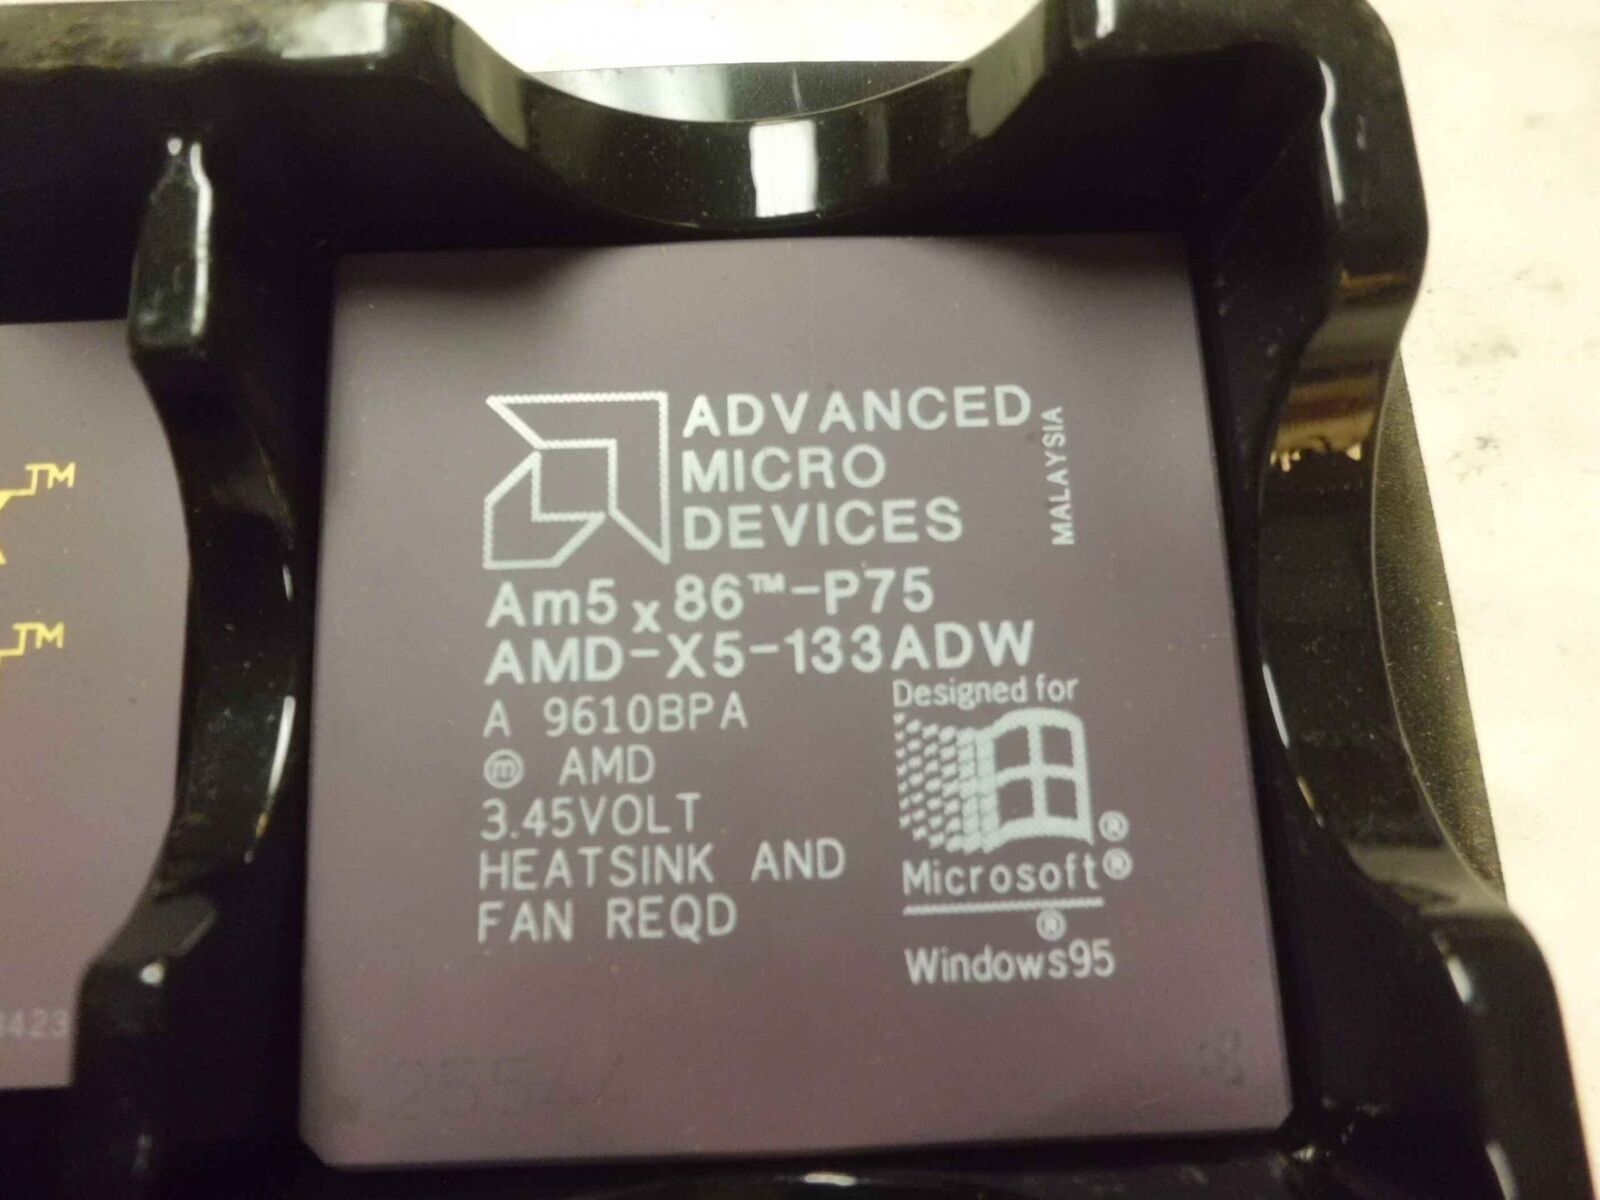 AM5X86-P75, AMD-X5-133ADW AMD P75 PROCESSOR 75MHZ